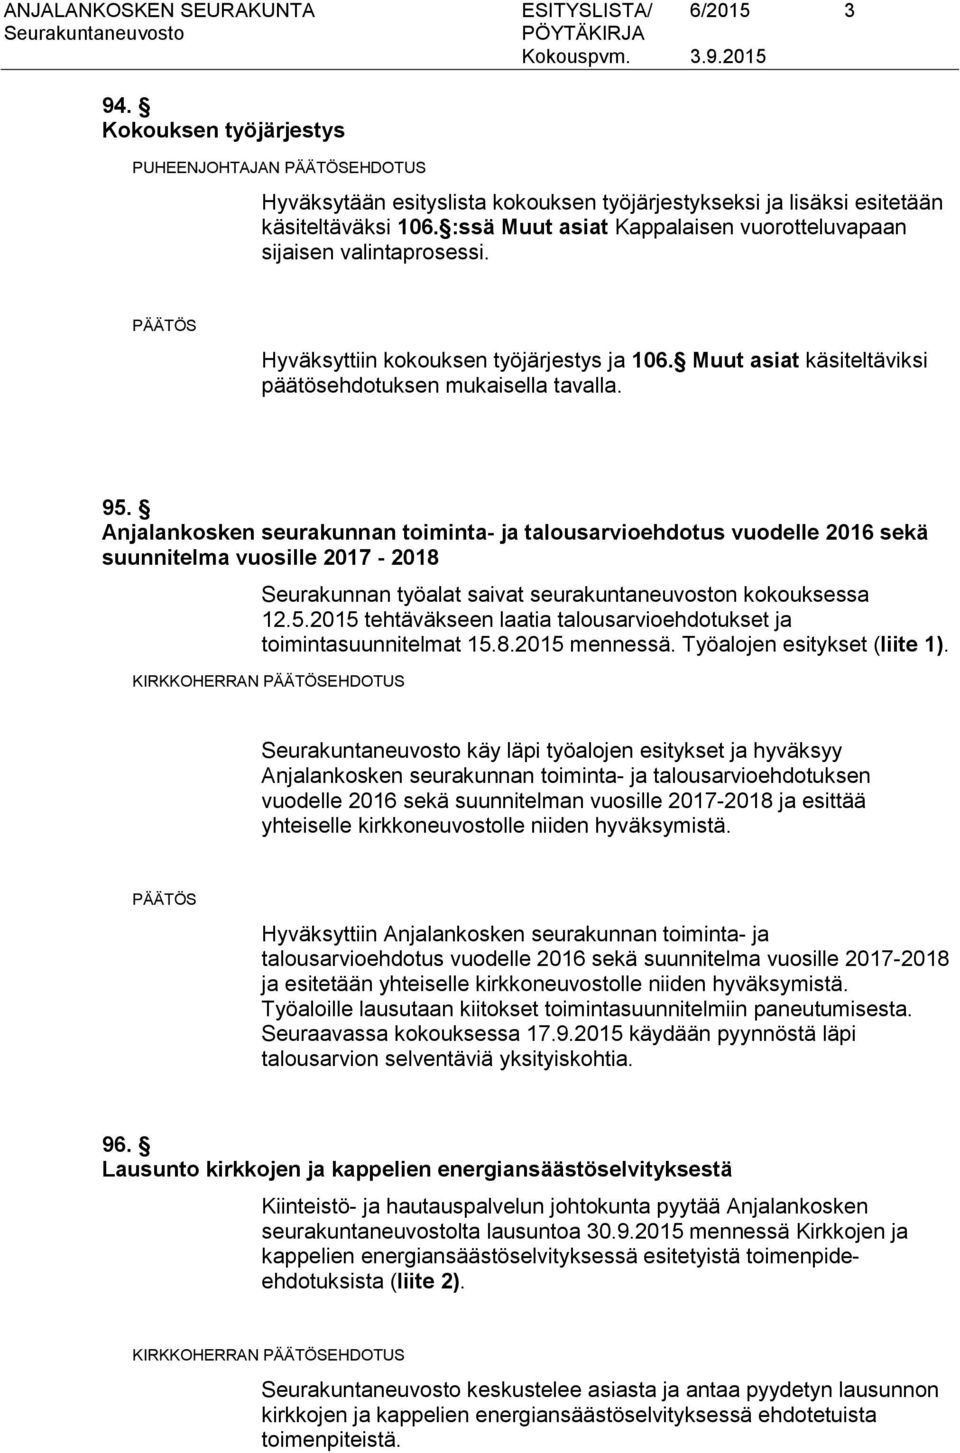 Anjalankosken seurakunnan toiminta- ja talousarvioehdotus vuodelle 2016 sekä suunnitelma vuosille 2017-2018 Seurakunnan työalat saivat seurakuntaneuvoston kokouksessa 12.5.